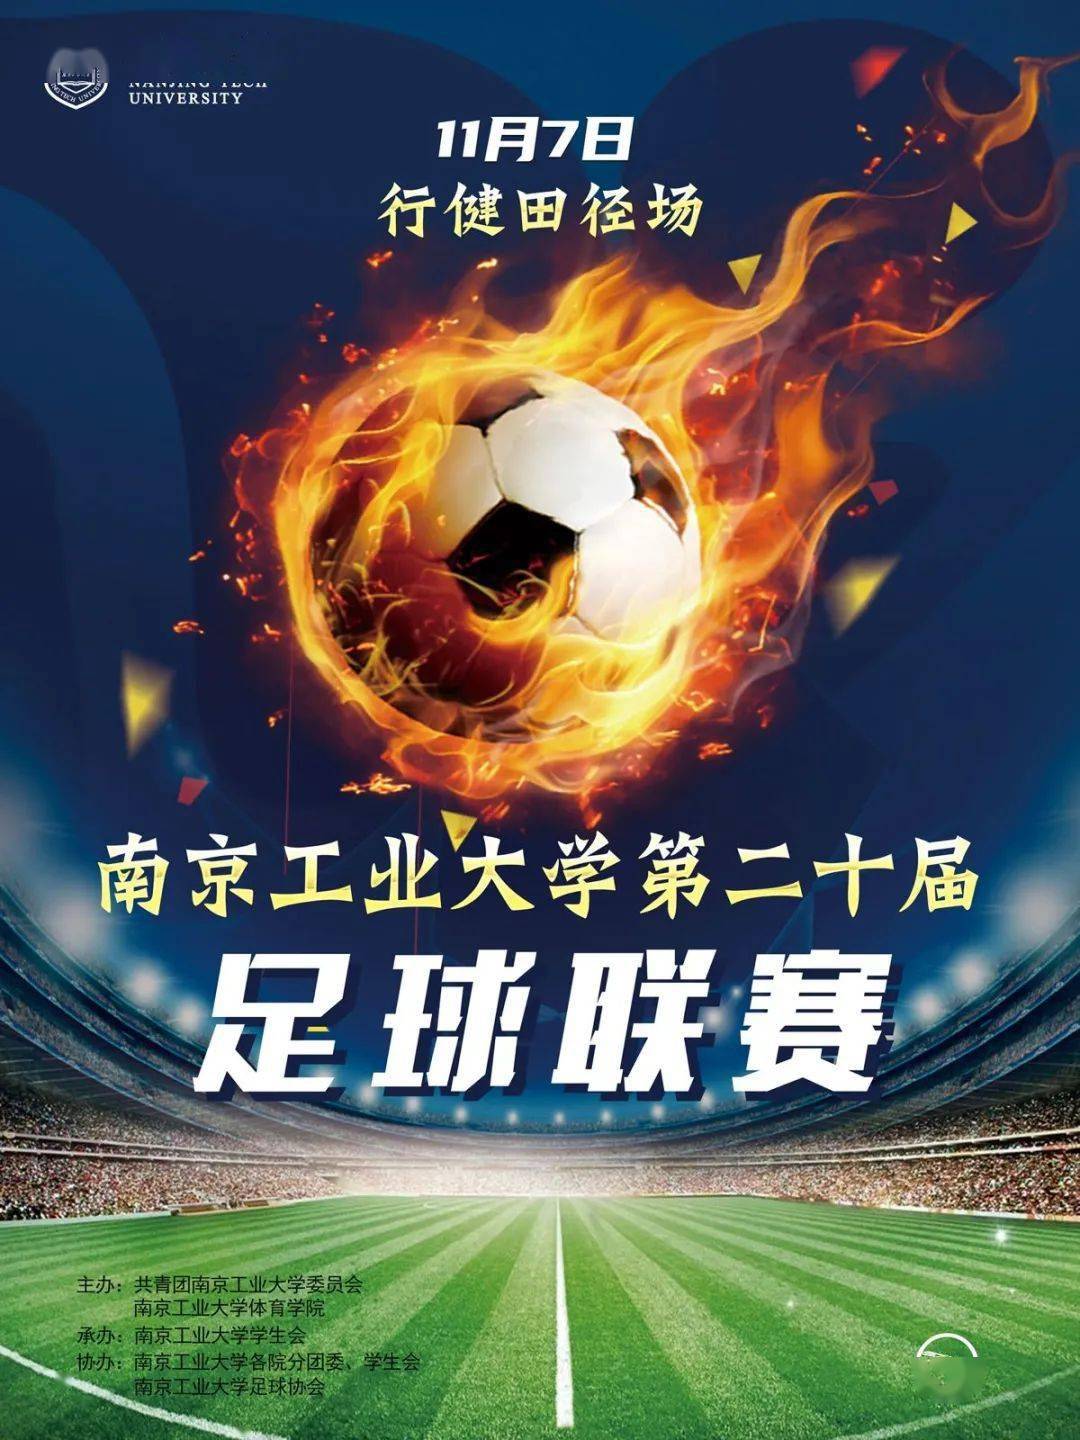 
【足球联赛】南京工业大学第二十届足球联赛就要开始啦！【澳门新葡8455最新网站下载】(图2)